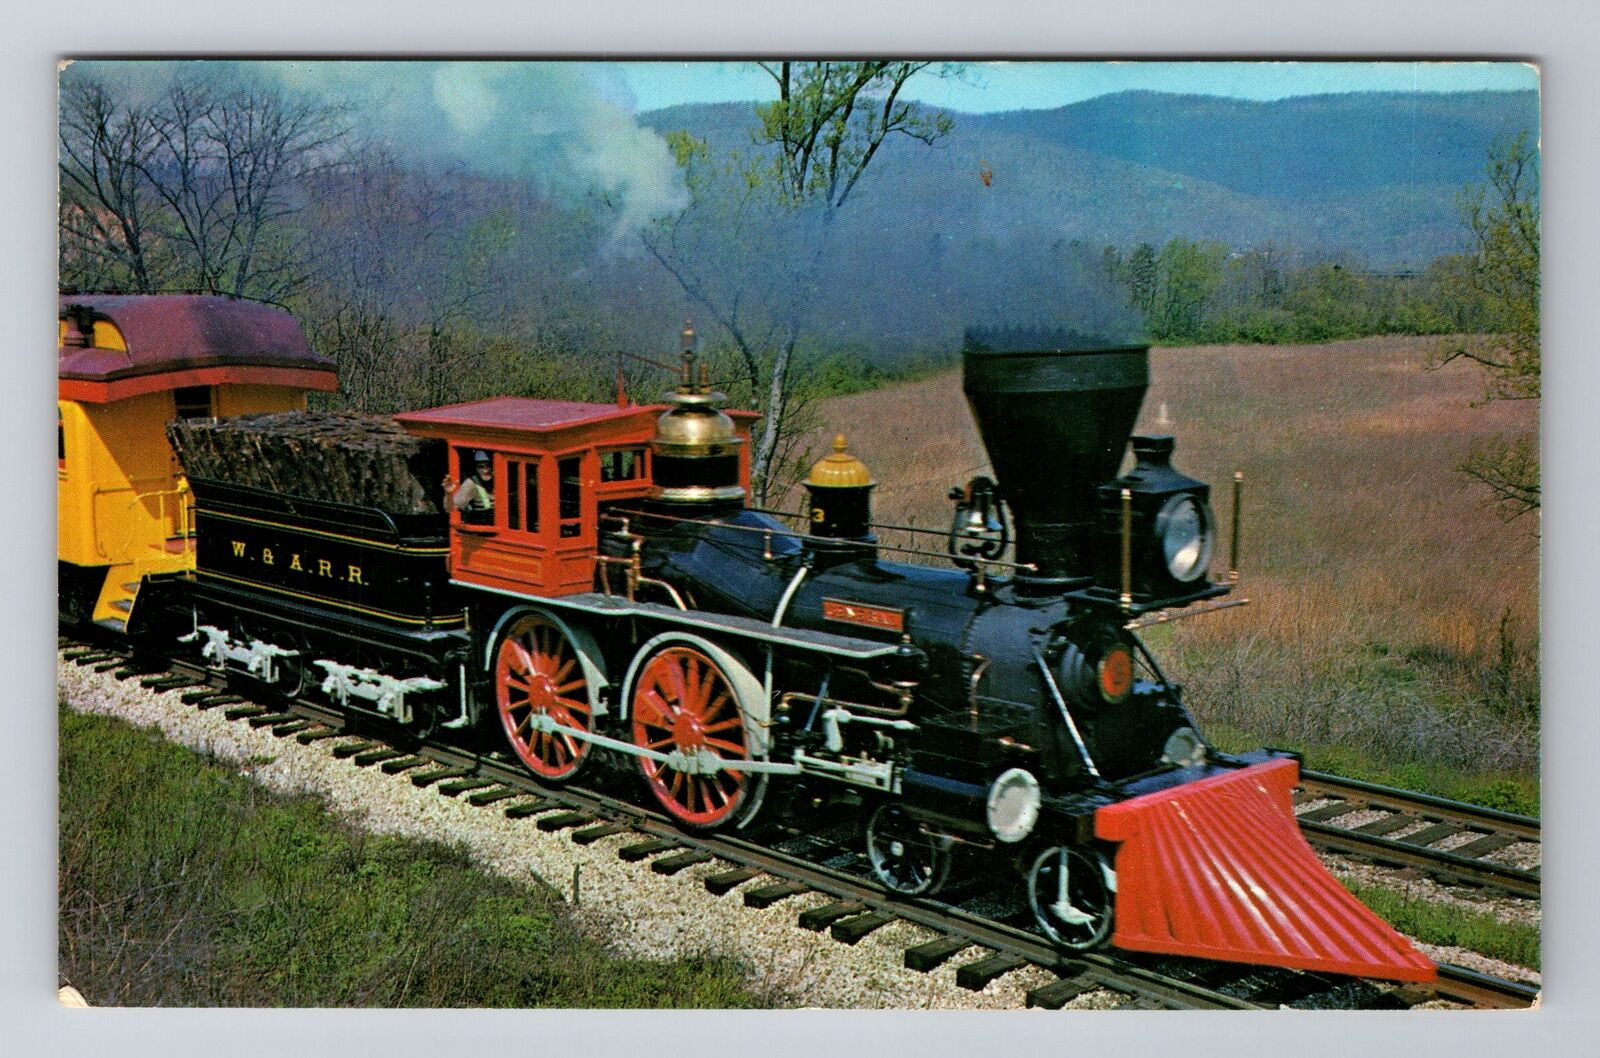 Famous Engine General Civil War Locomotive, Train, Vintage Souvenir Postcard